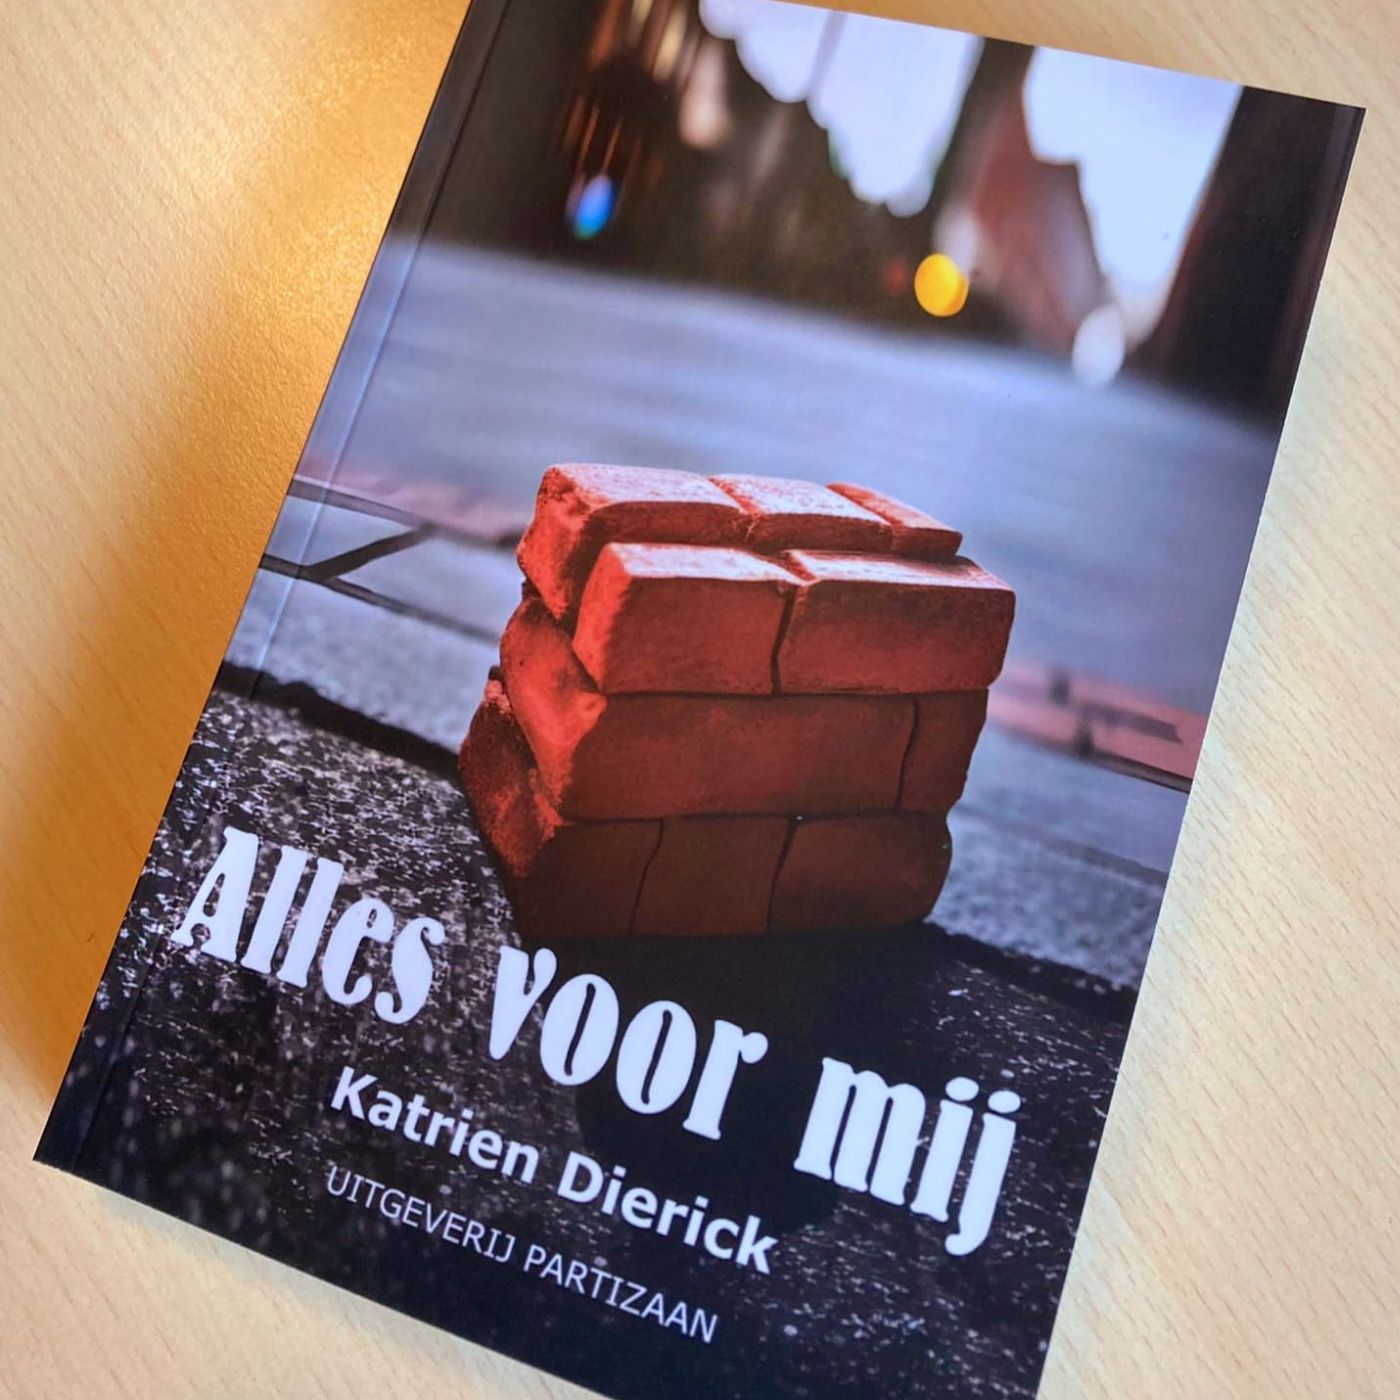 "Alles voor mij" - Katrien Dierick stelt haar nieuwe roman voor